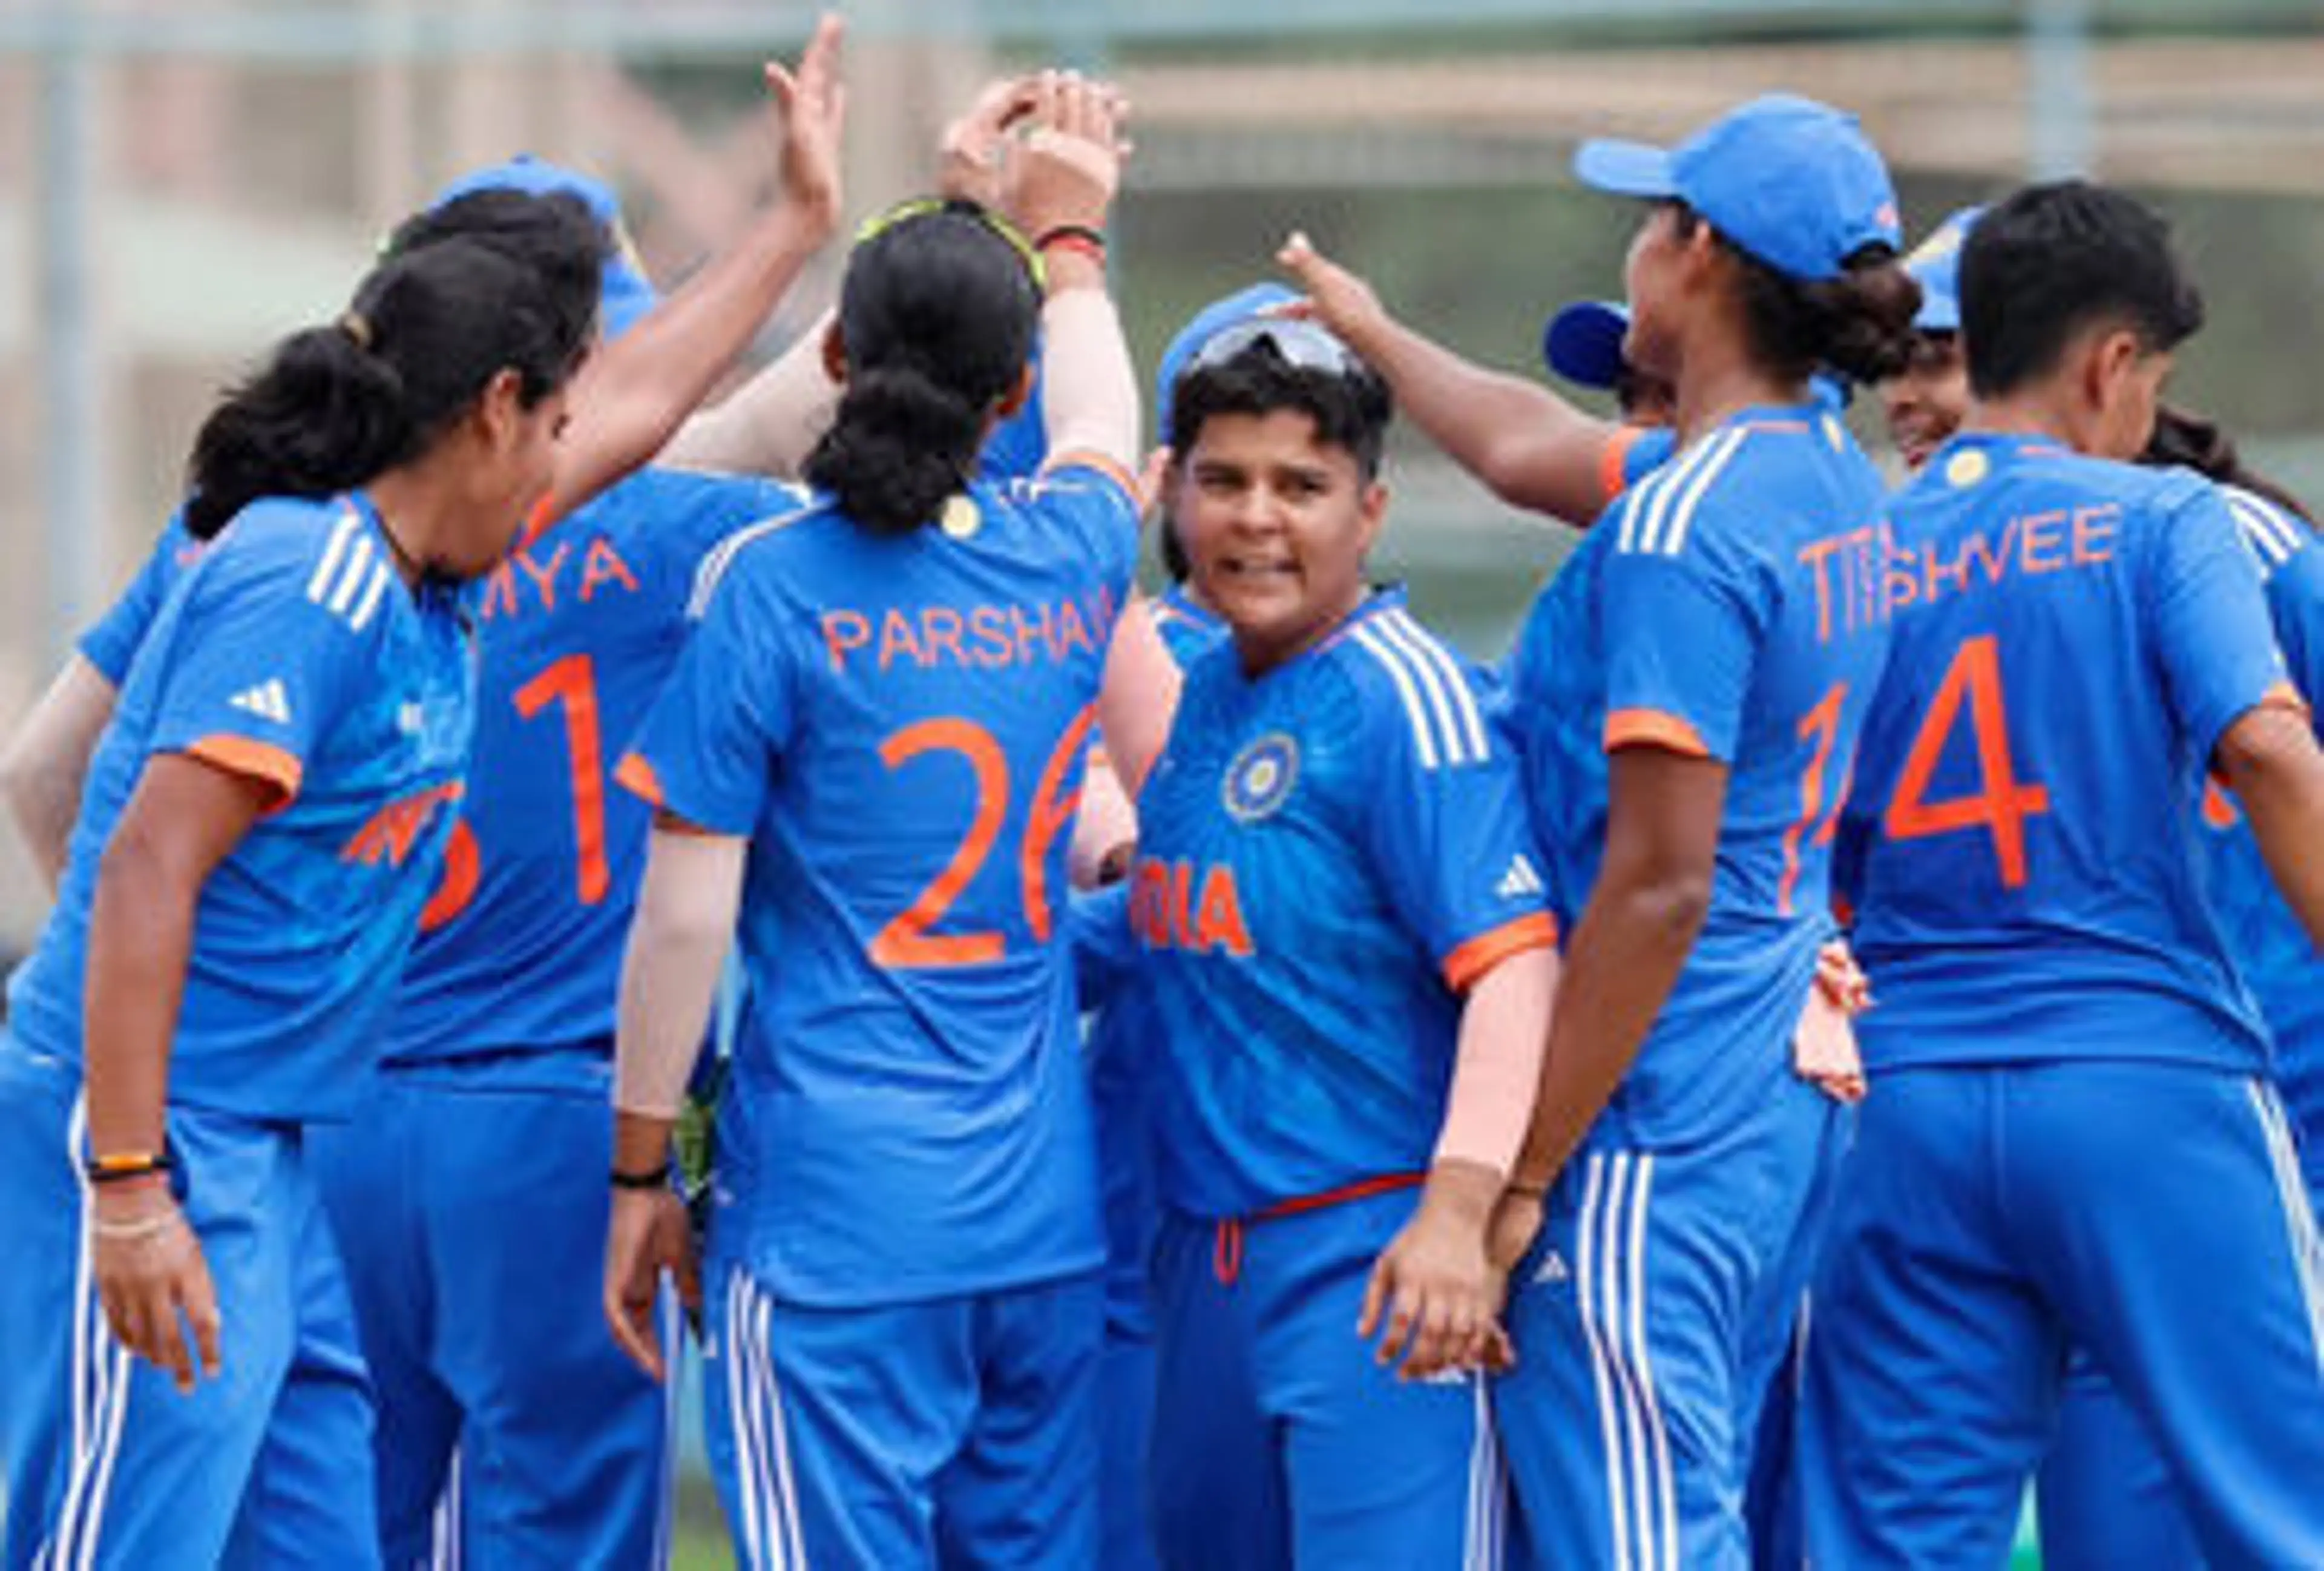 બાંગ્લાદેશ પ્રવાસ માટે ભારતીય મહિલા ક્રિકેટ ટીમની જાહેરાત, આ 3 ક્રિકેટરોને ટીમમાં ન મળ્યું સ્થાન